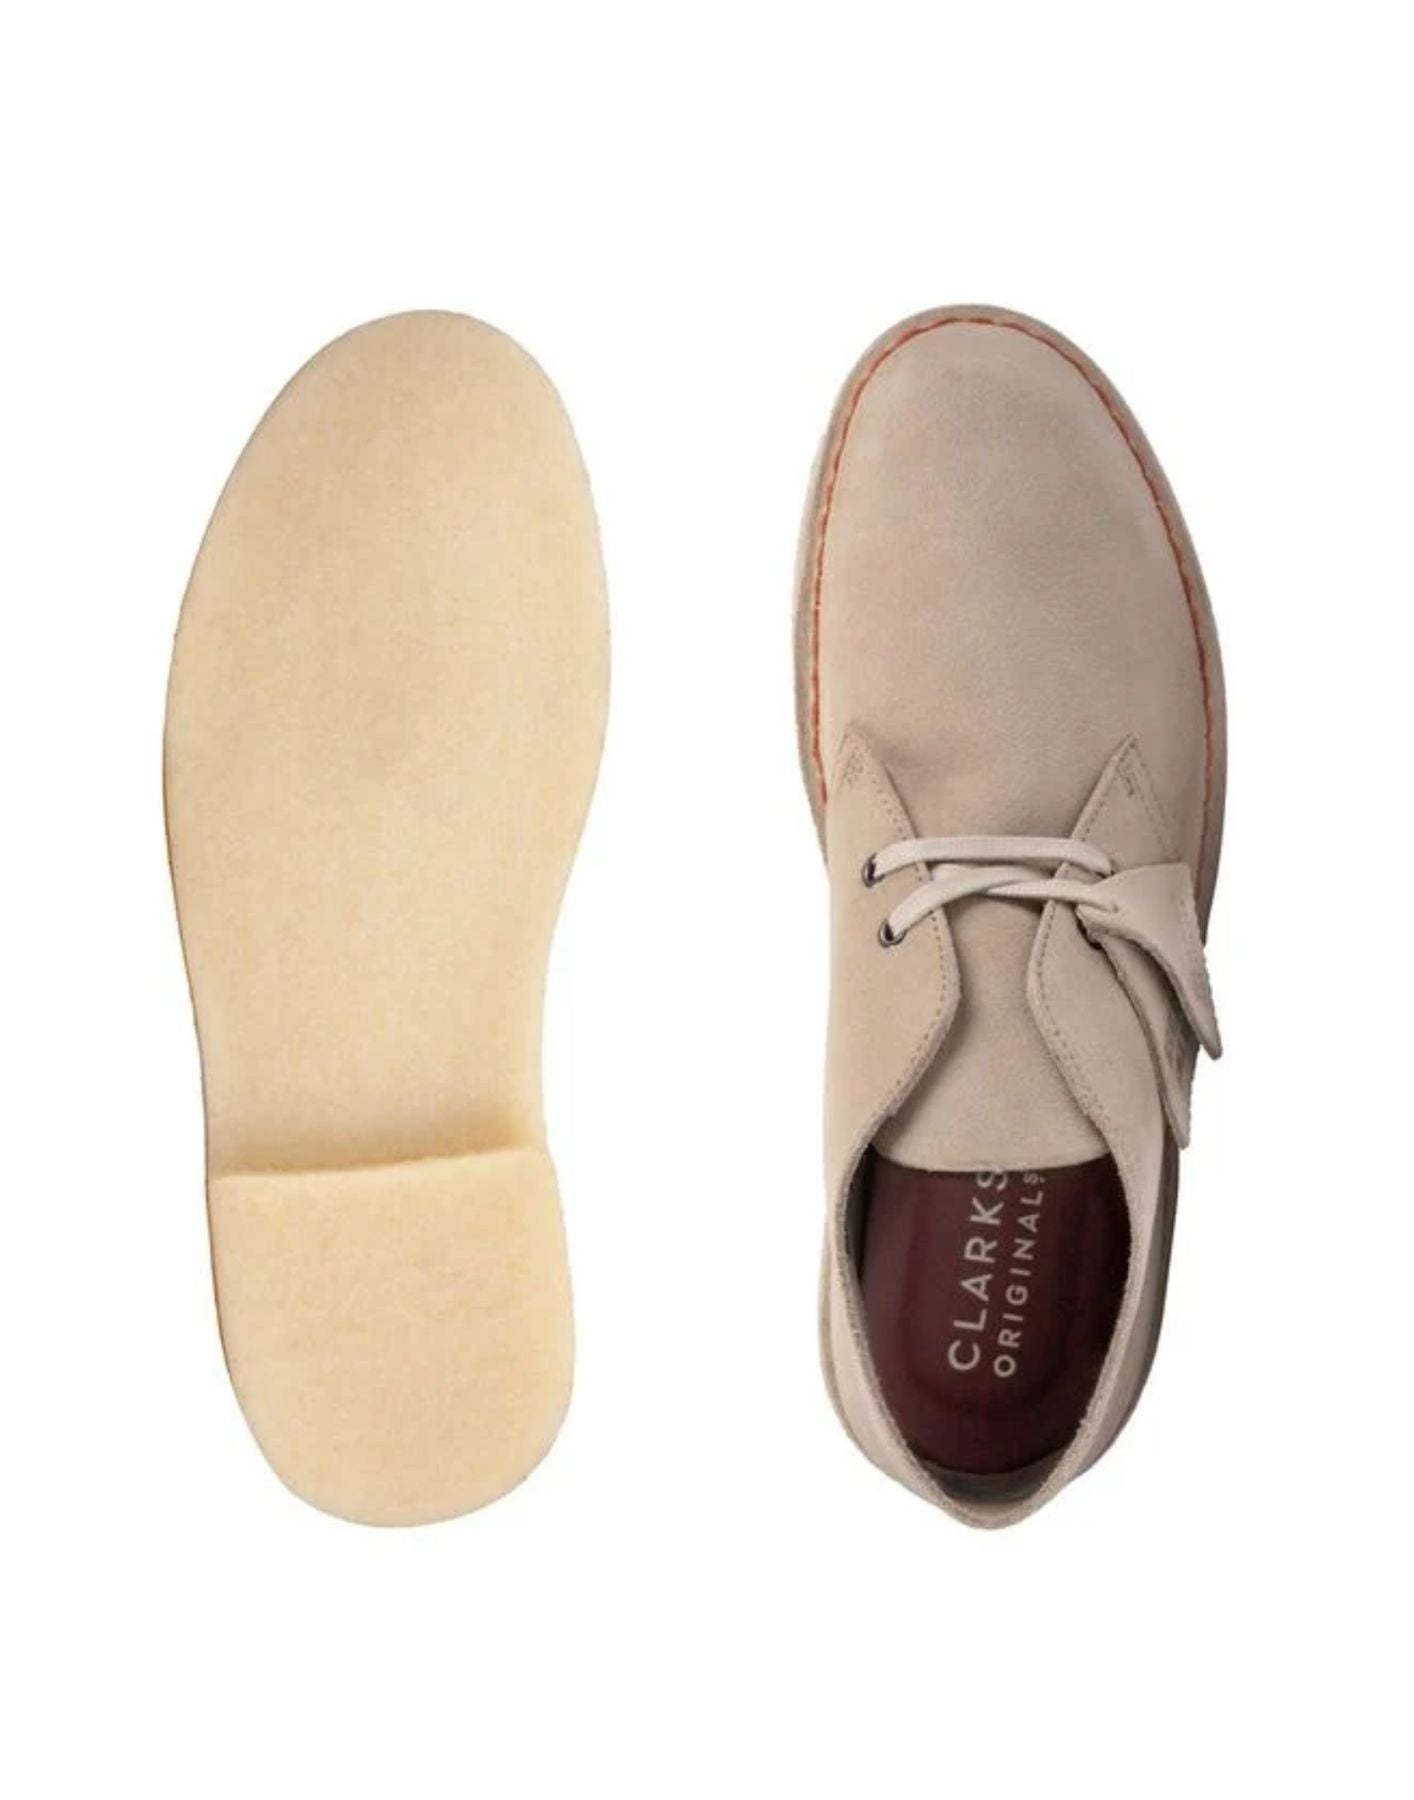 Schuhe für Mann Desert Boot Sand Wildleder Clarks Originale